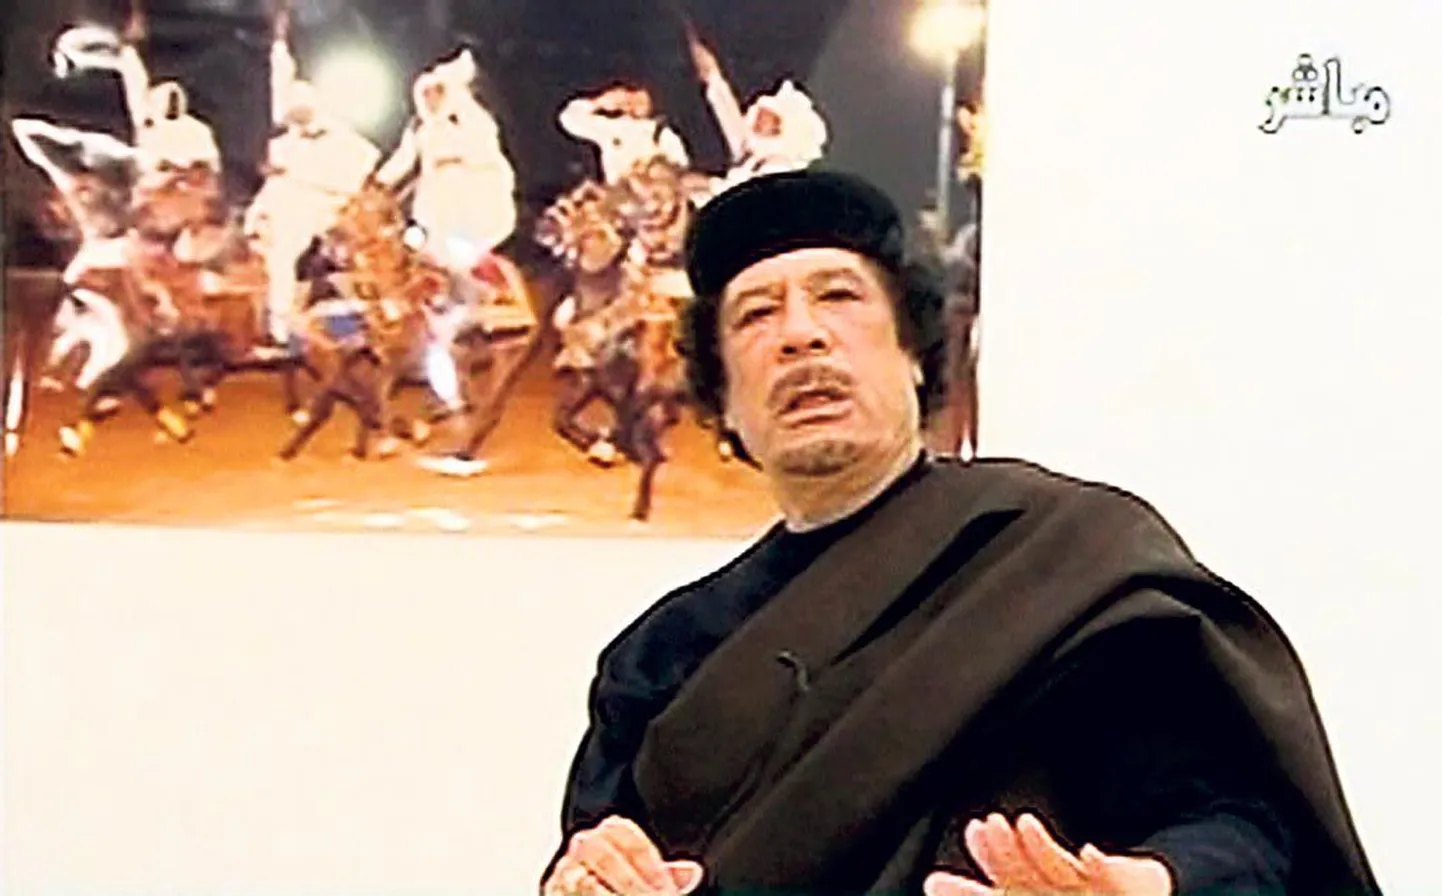 Liibüa diktaator Muammar Gaddafi ei kavatse tagasi astuda ja usub, et suudab probleemid lahendada.